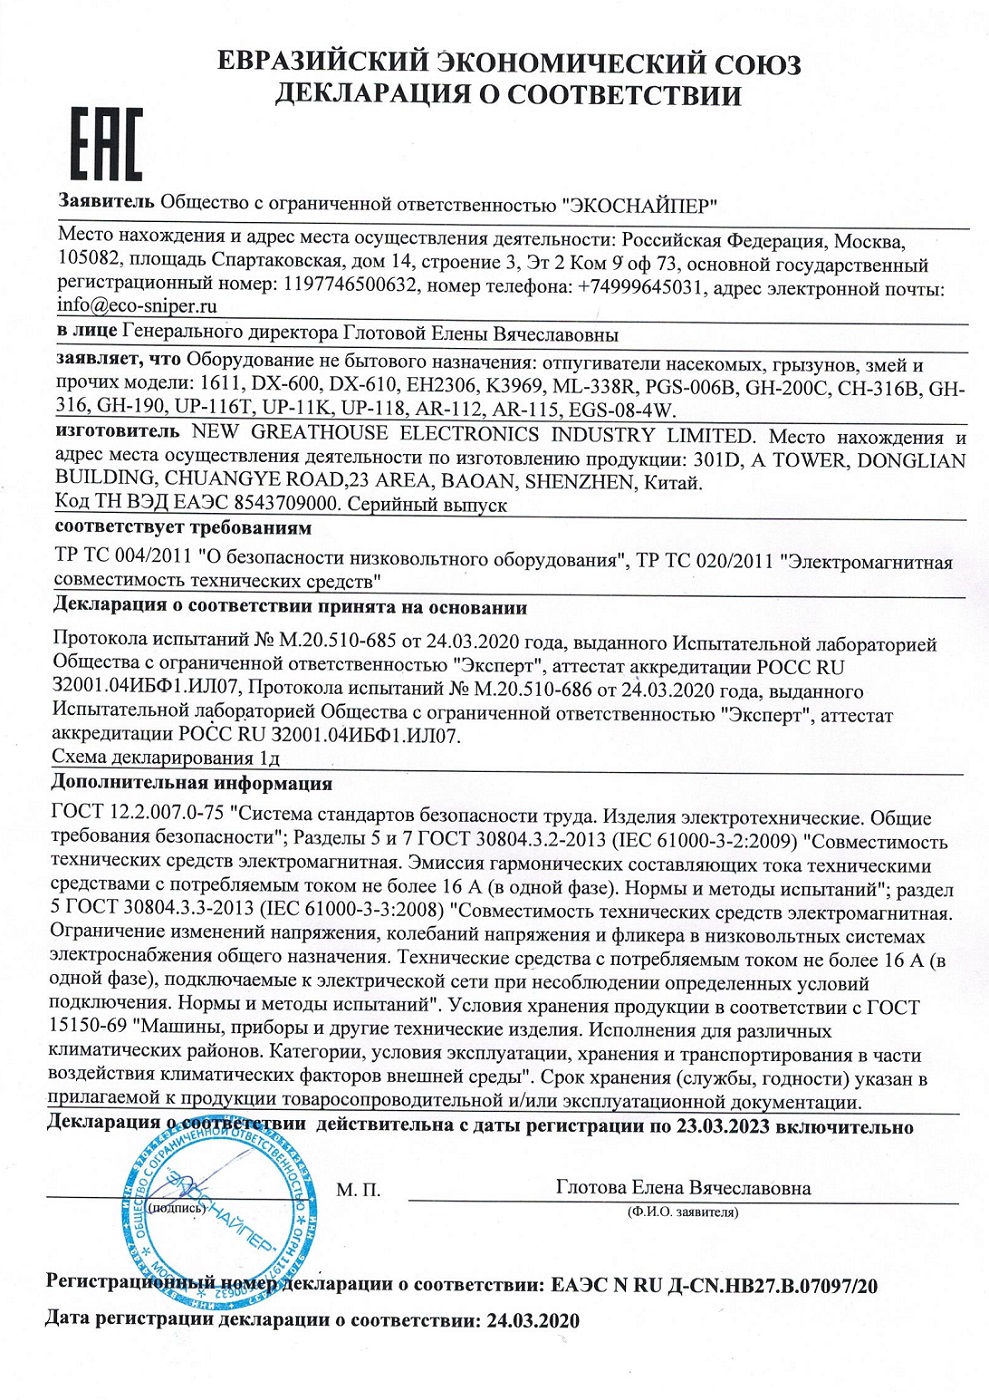 Сертификат соответствия на уничтожитель грызунов ЭкоСнайпер GH-190 (нажмите=